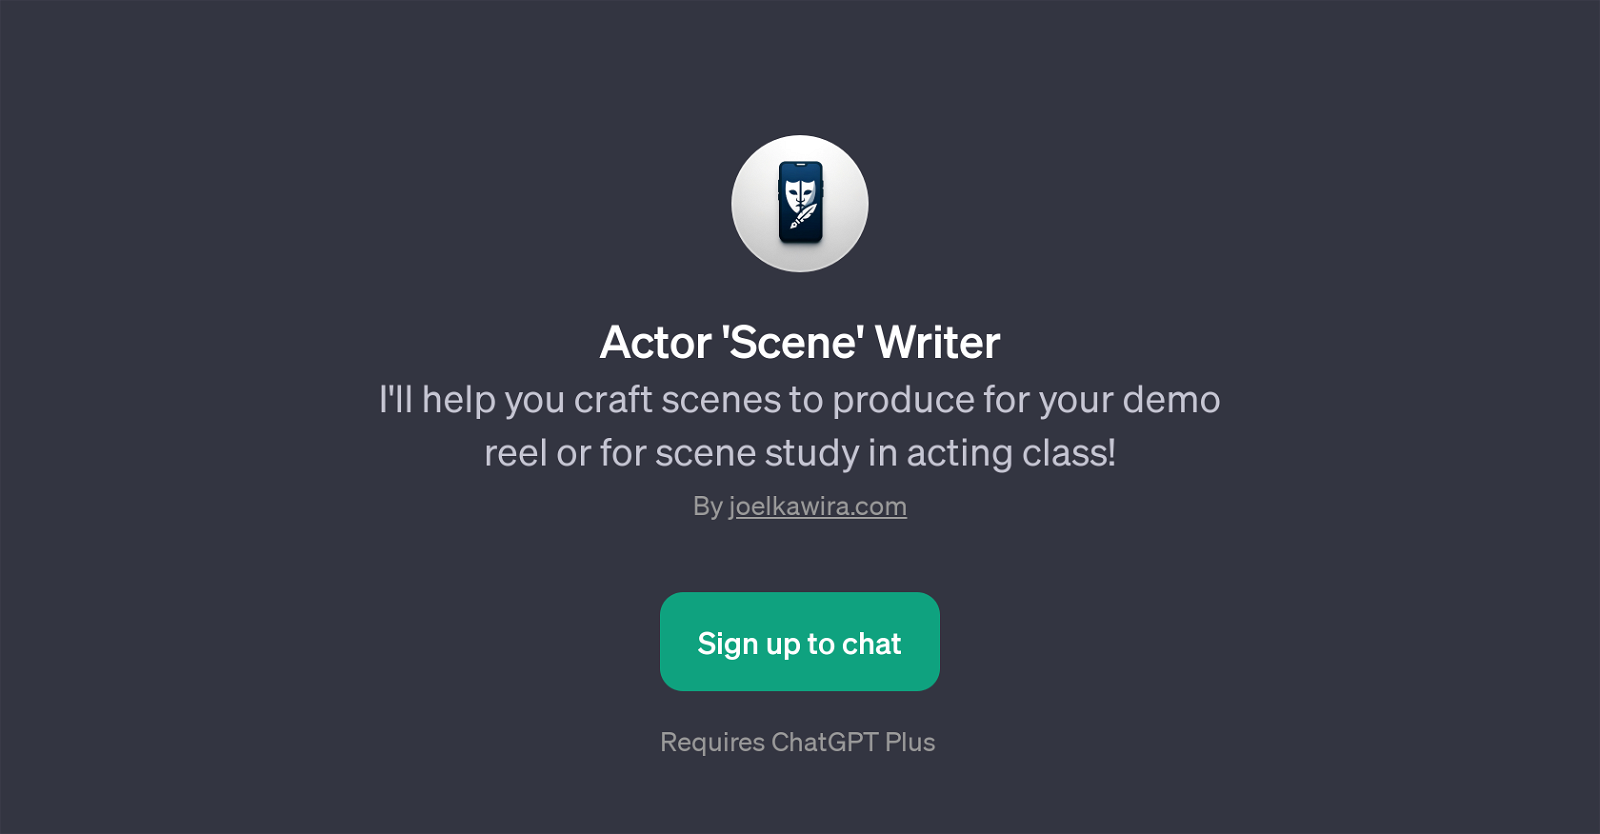 Actor 'Scene' Writer website